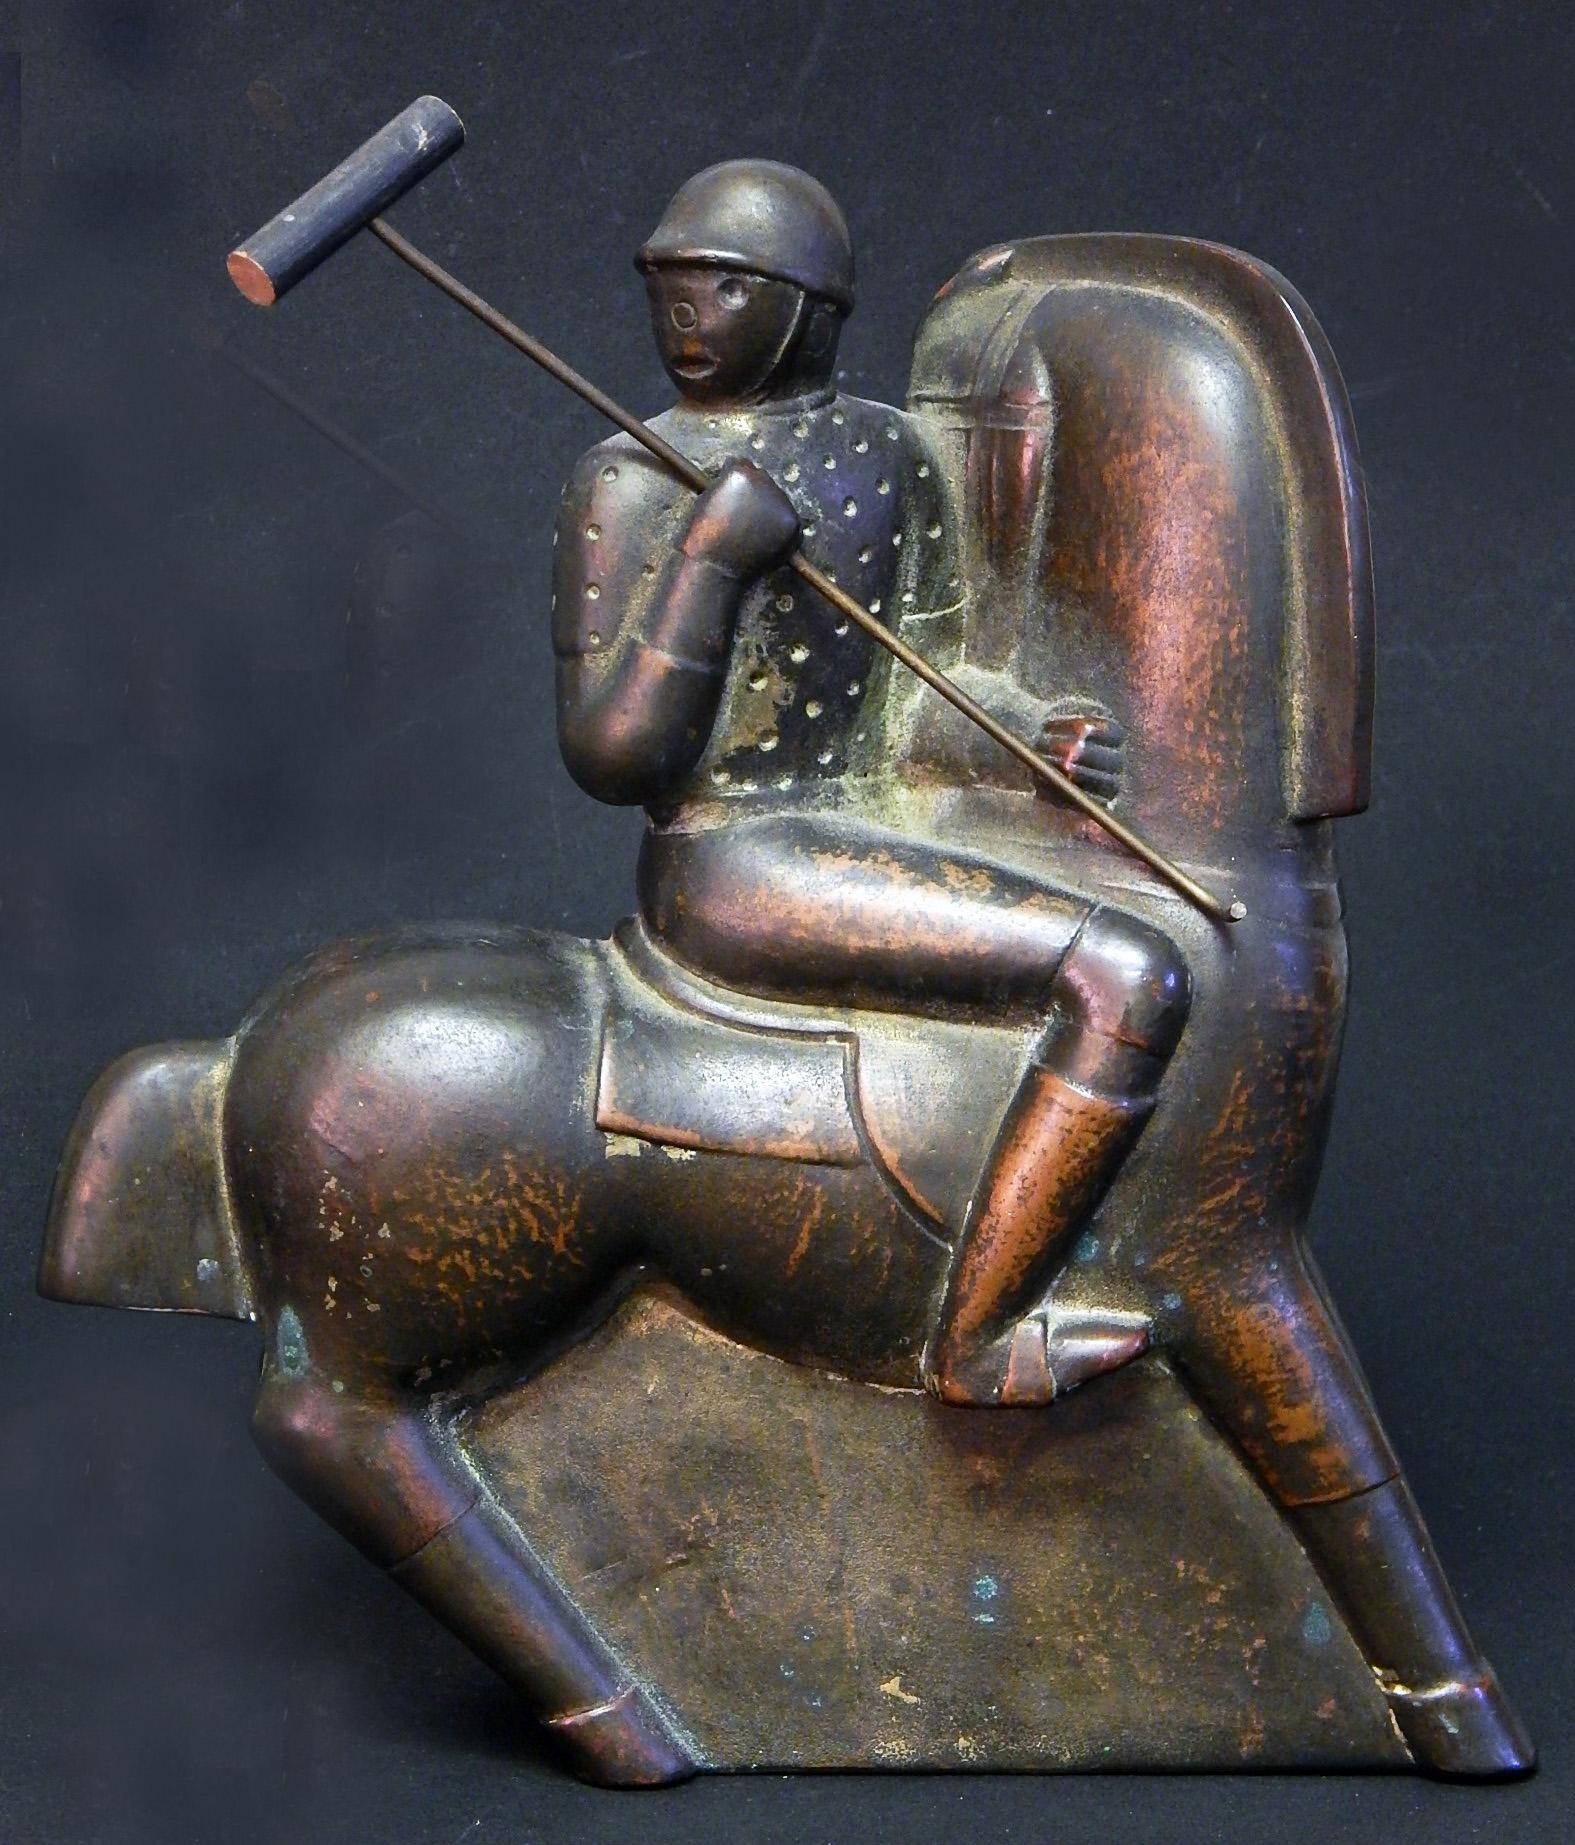 Dieses sehr seltene und auffällige Paar Polospieler, glasiert in einer reichen, tiefen, bronzeähnlichen Glasur, die mit Altgold hervorgehoben ist, stellt einen der Höhepunkte der Art-Déco-Skulptur in Amerika dar. Die von Hand gefertigten und